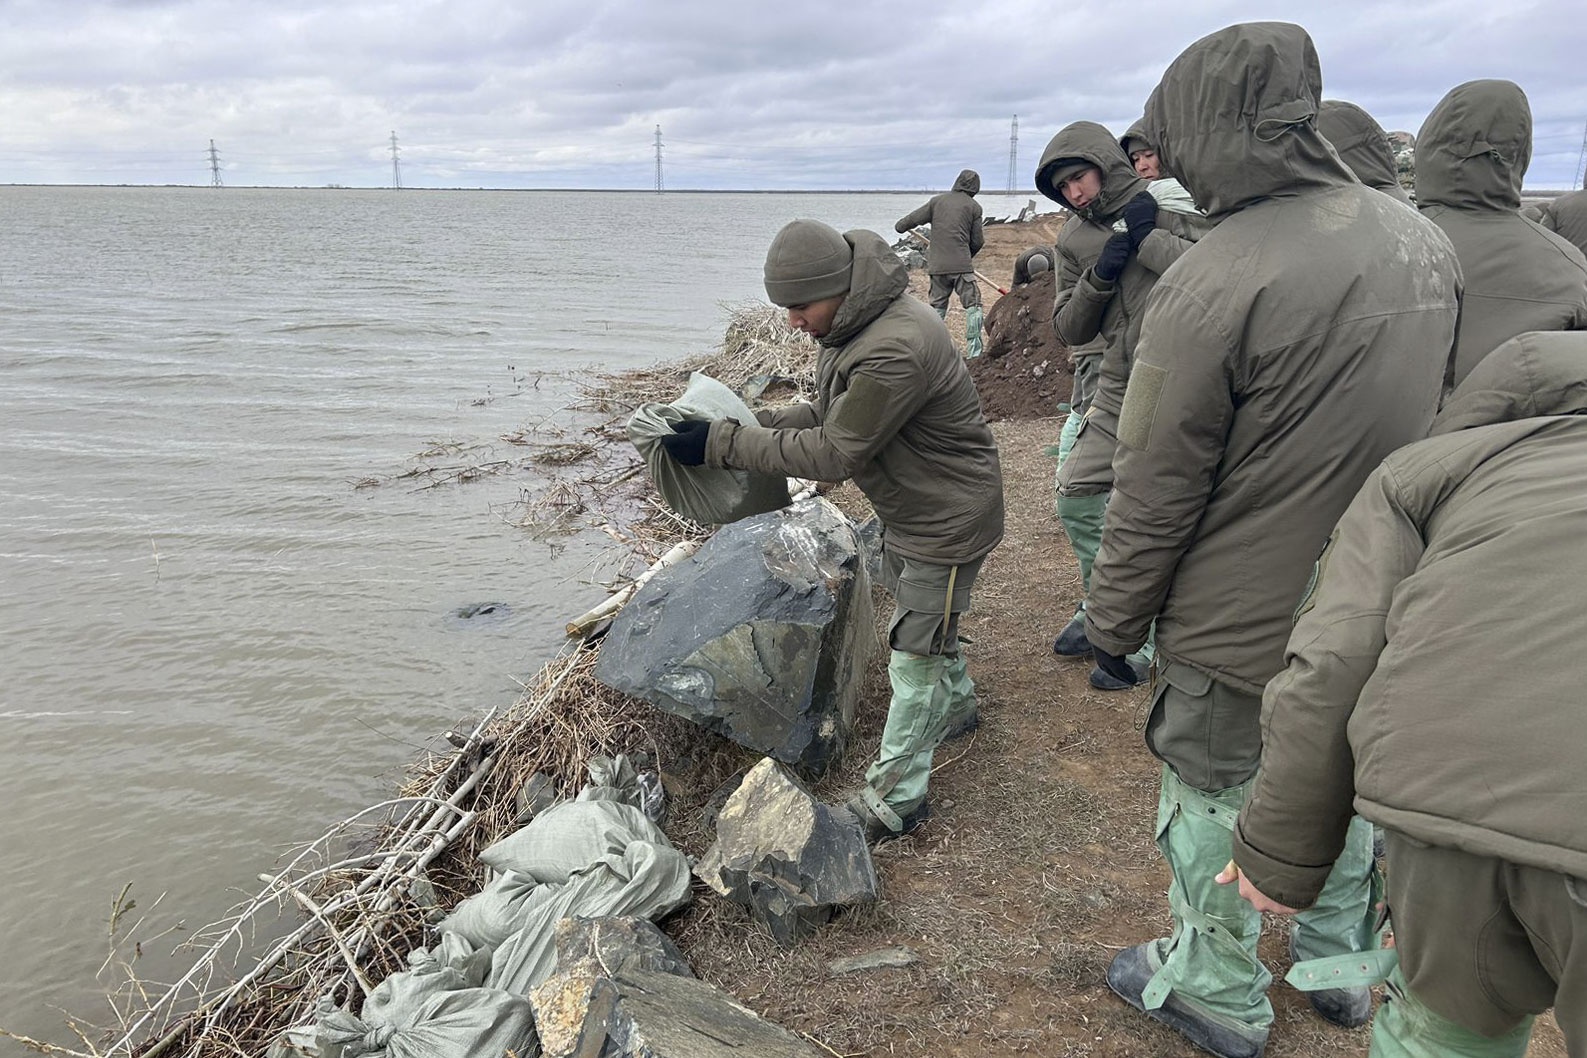 kazajistán envía a medio millar de militares y rescatistas a oral tras la ruptura de un dique